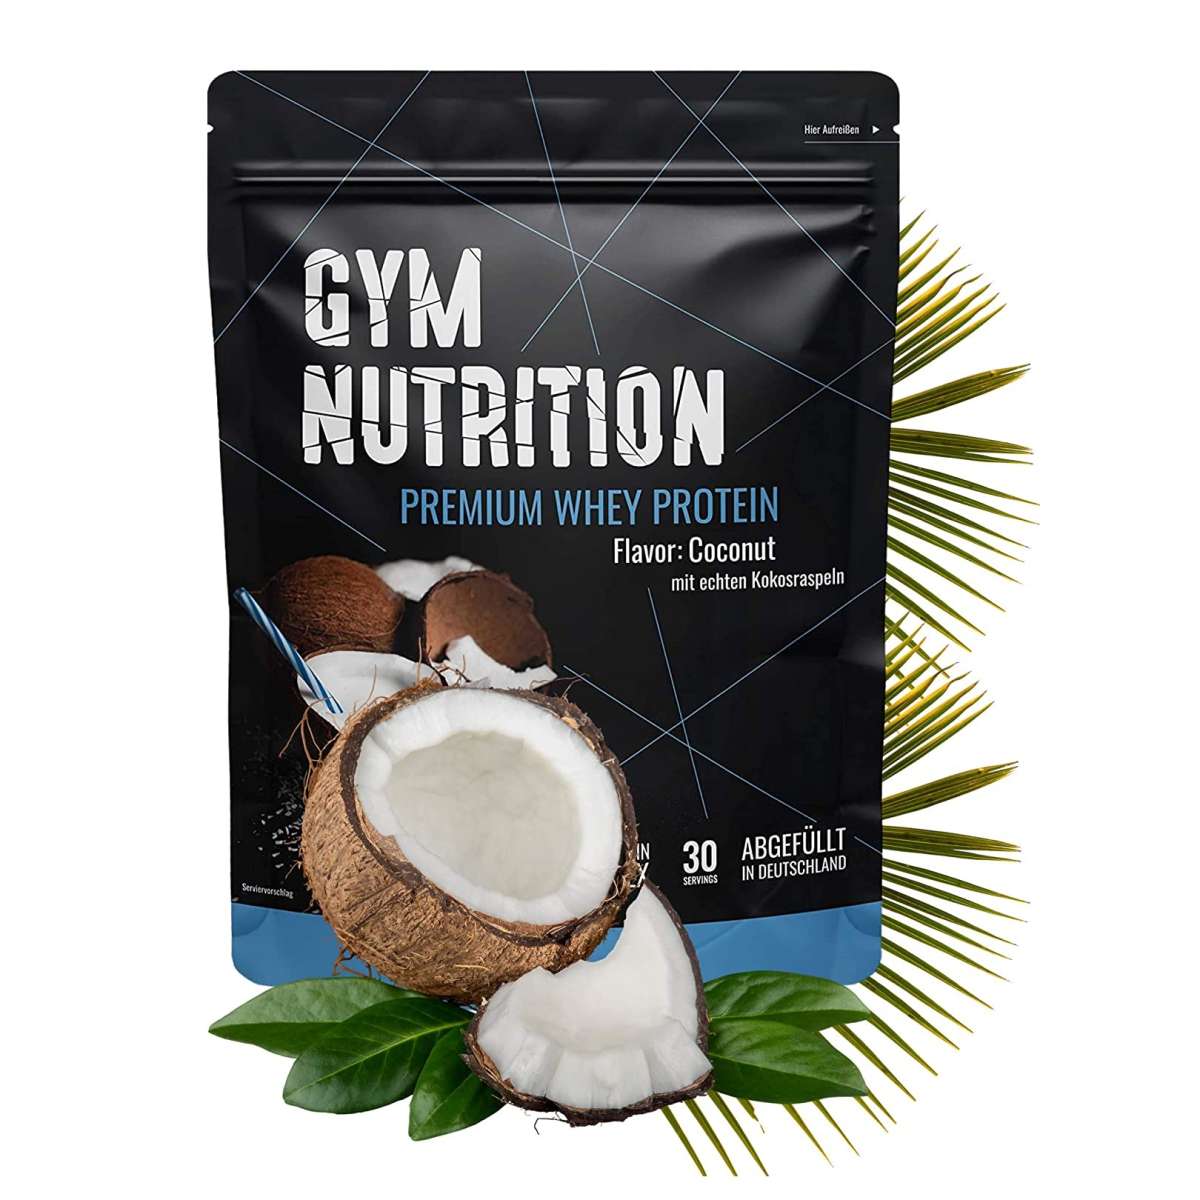 Gym Nutrition Premium Whey Protein - 900g Beutel